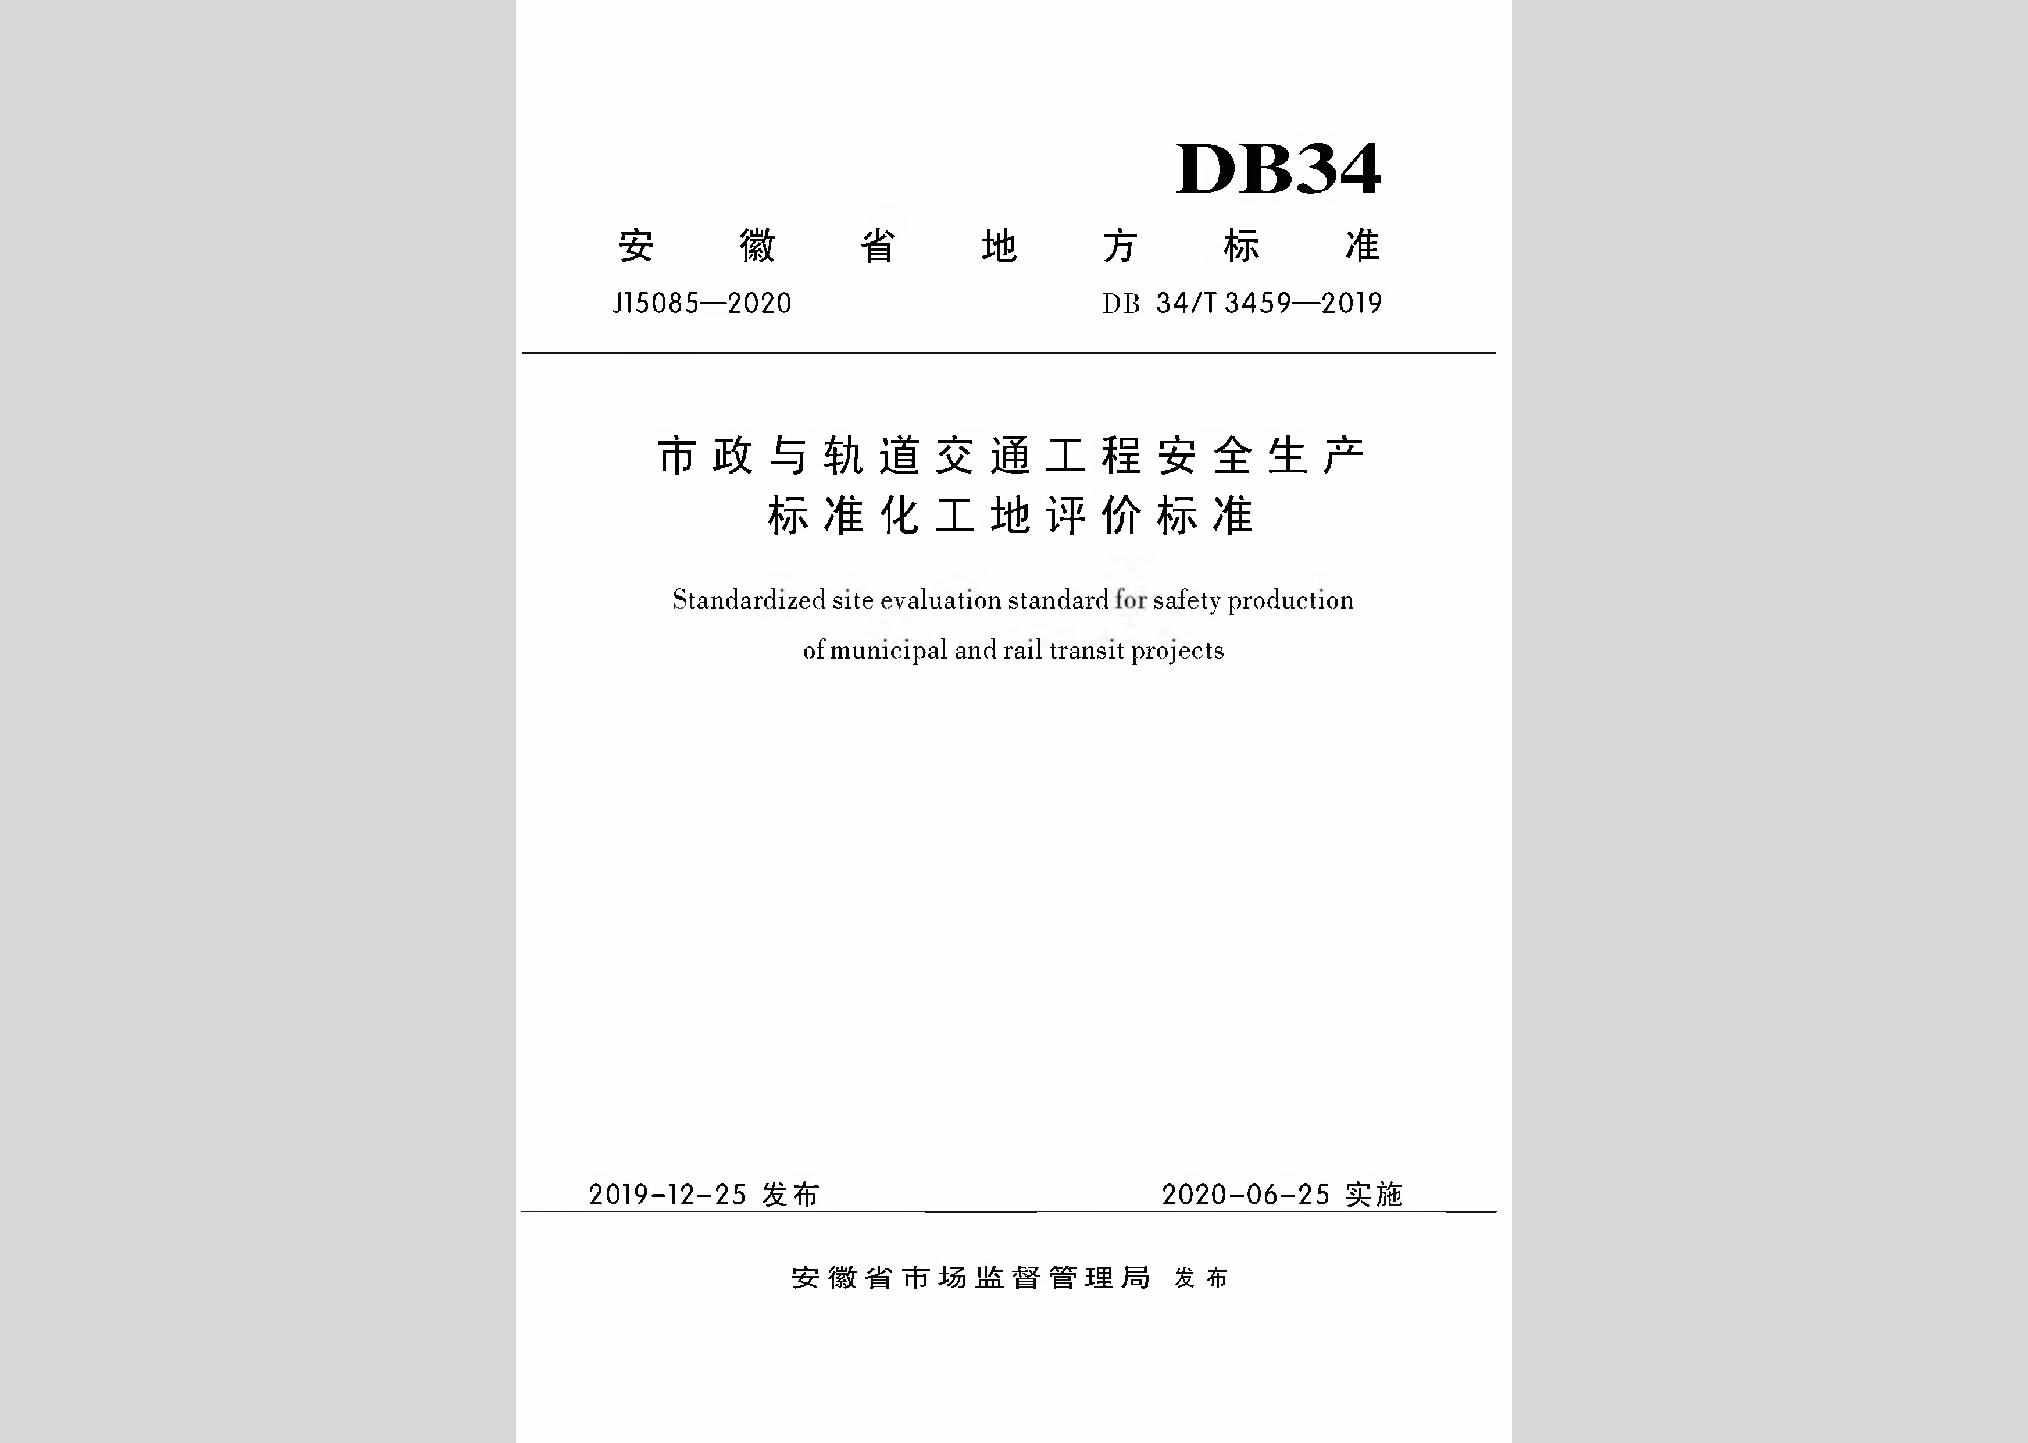 DB34/T3459-2019：市政与轨道交通工程安全生产标准化工地平评价标准